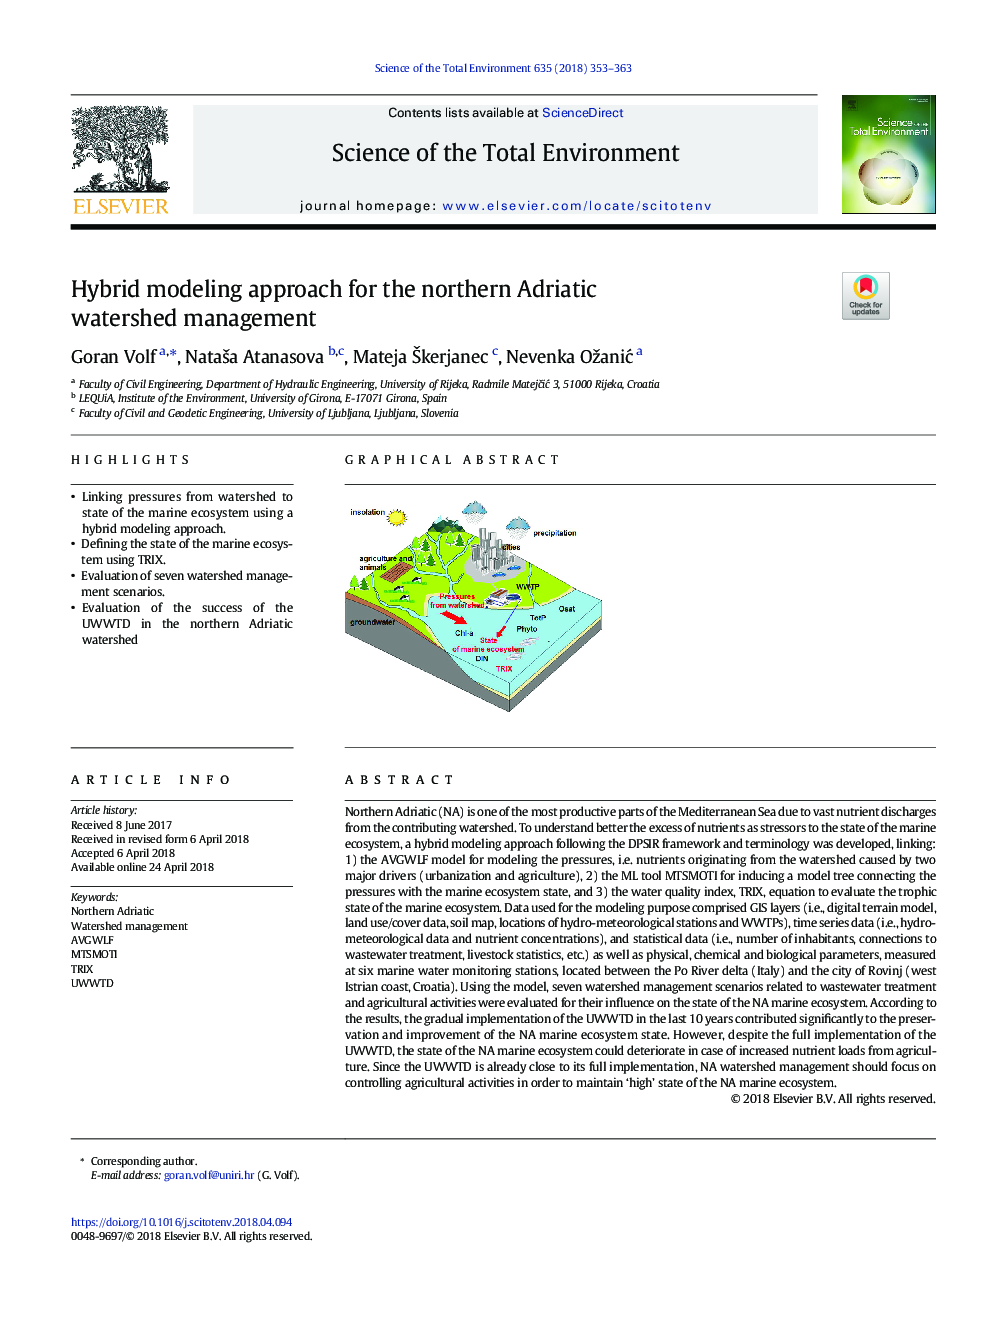 رویکرد مدل سازی ترکیبی برای مدیریت حوضه آفریقای شمالی 